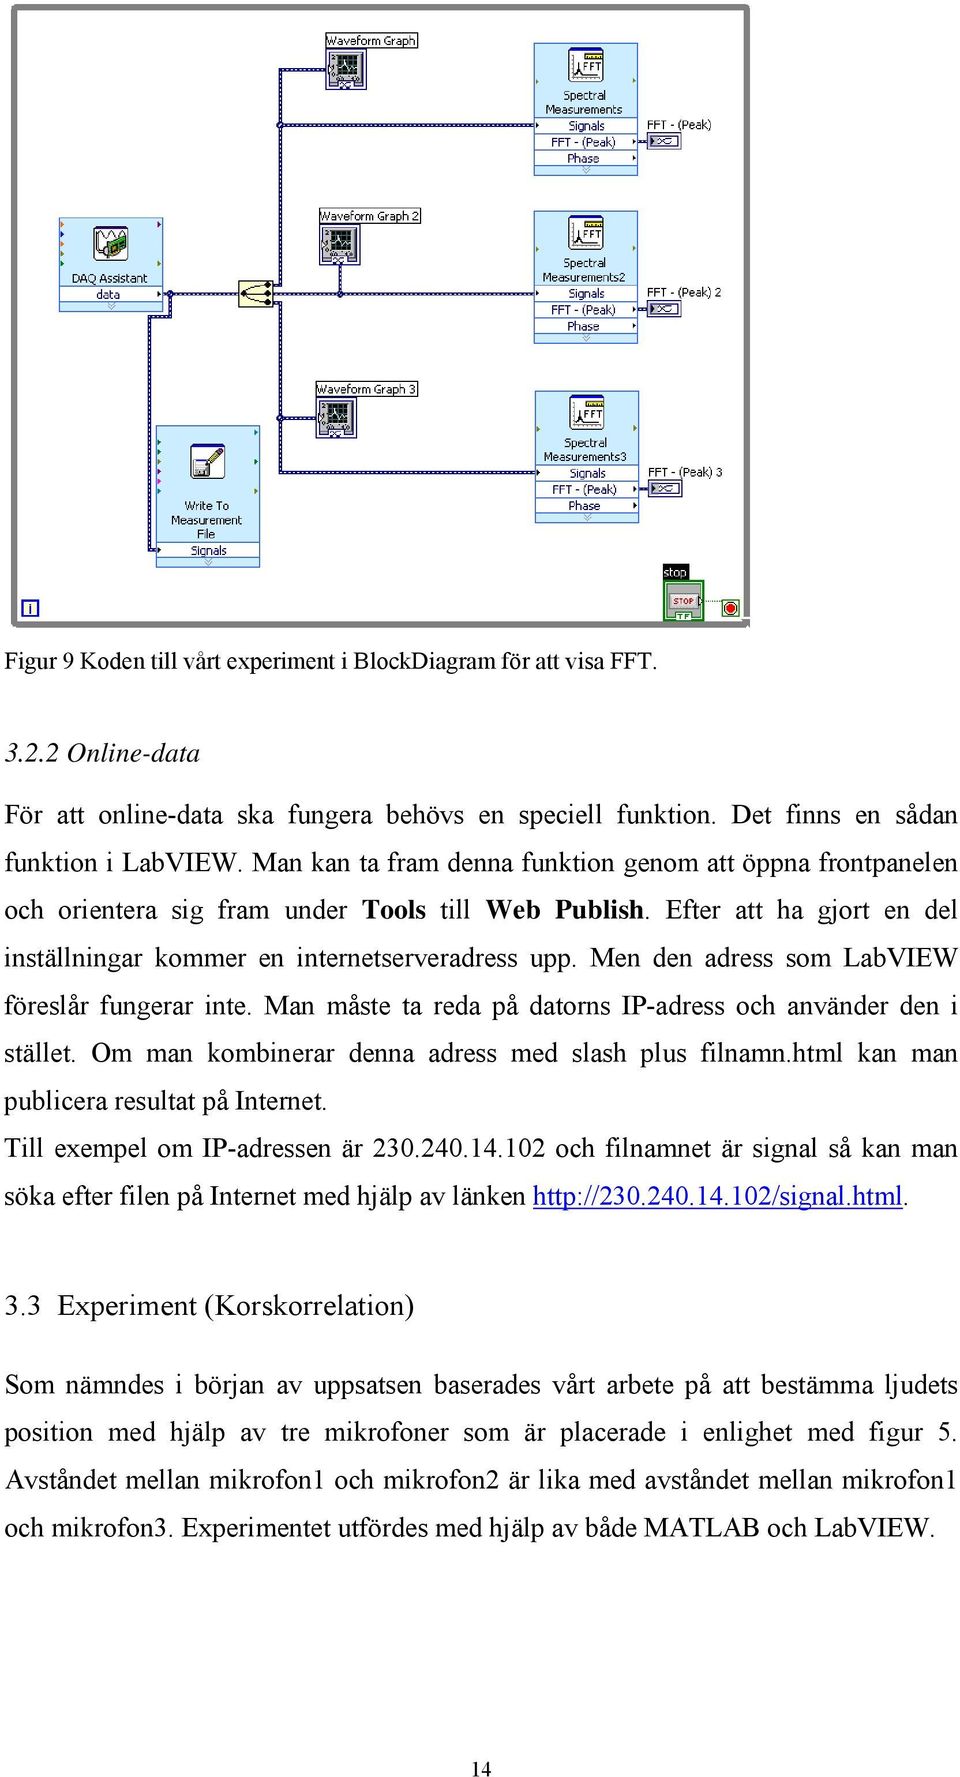 Men den adress som LabVIEW föreslår fungerar inte. Man måste ta reda på datorns IP-adress och använder den i stället. Om man kombinerar denna adress med slash plus filnamn.